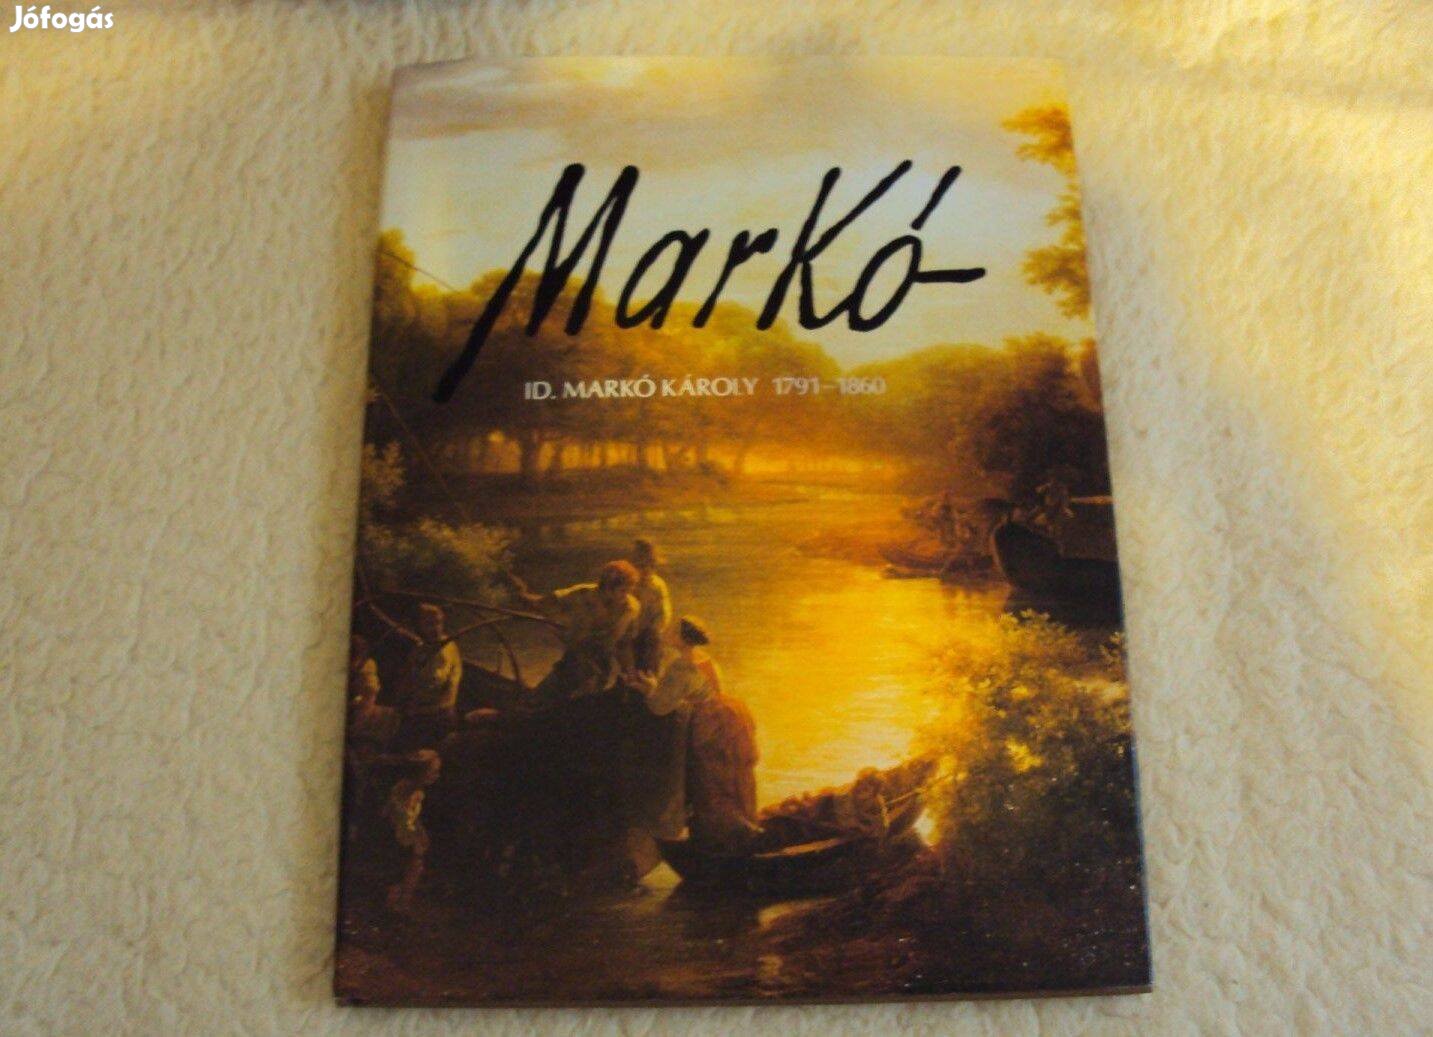 Id. Markó Károly-album